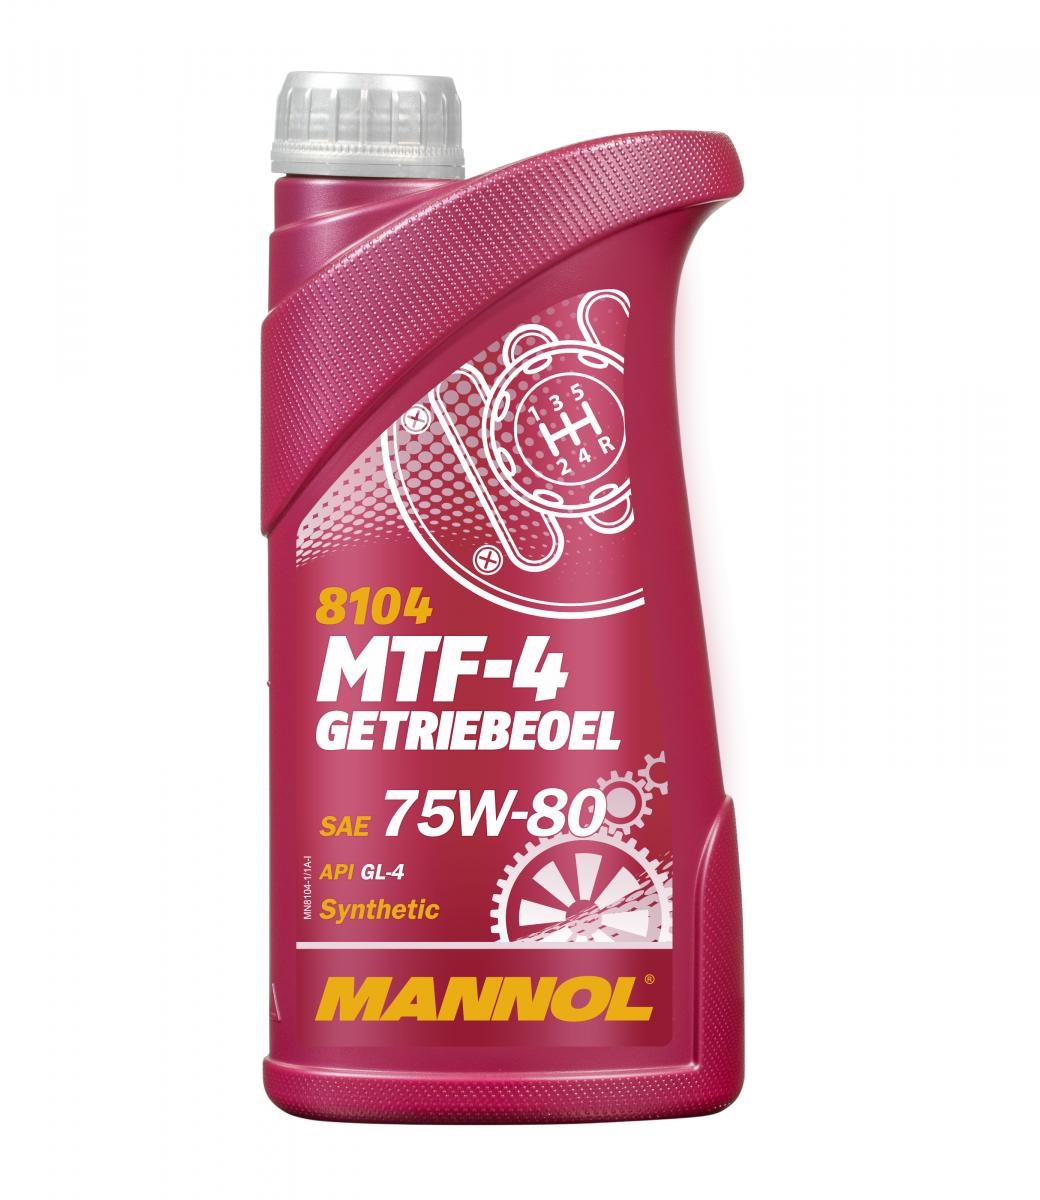 MANNOL MTF-4, GL-4 MN8104-1 LML Getriebeöl Motorrad zum günstigen Preis